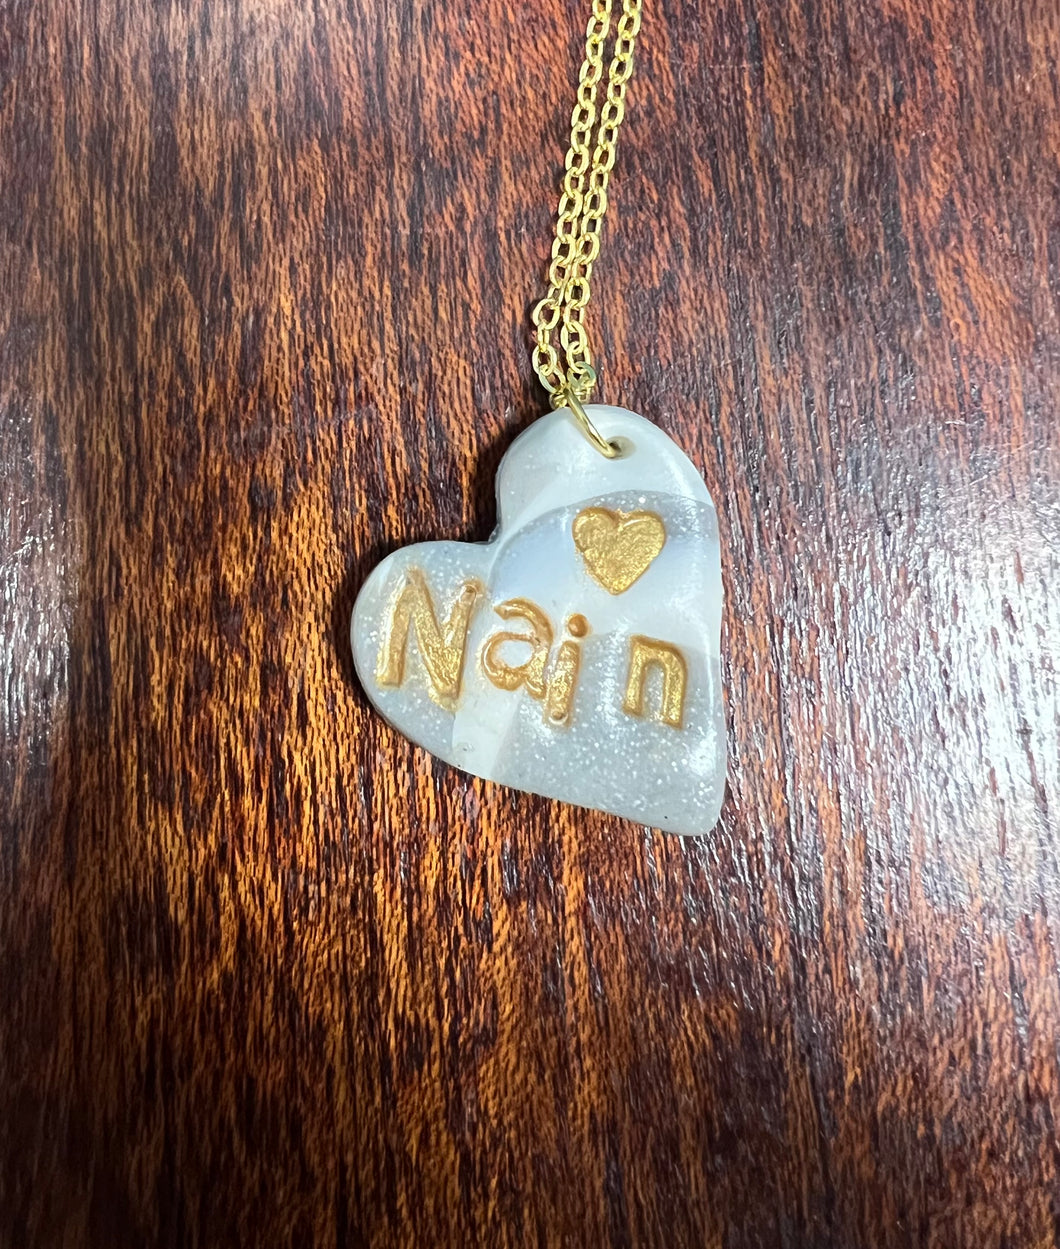 Mwclis marbl ‘Nain’ / ‘Nain’ marble necklace